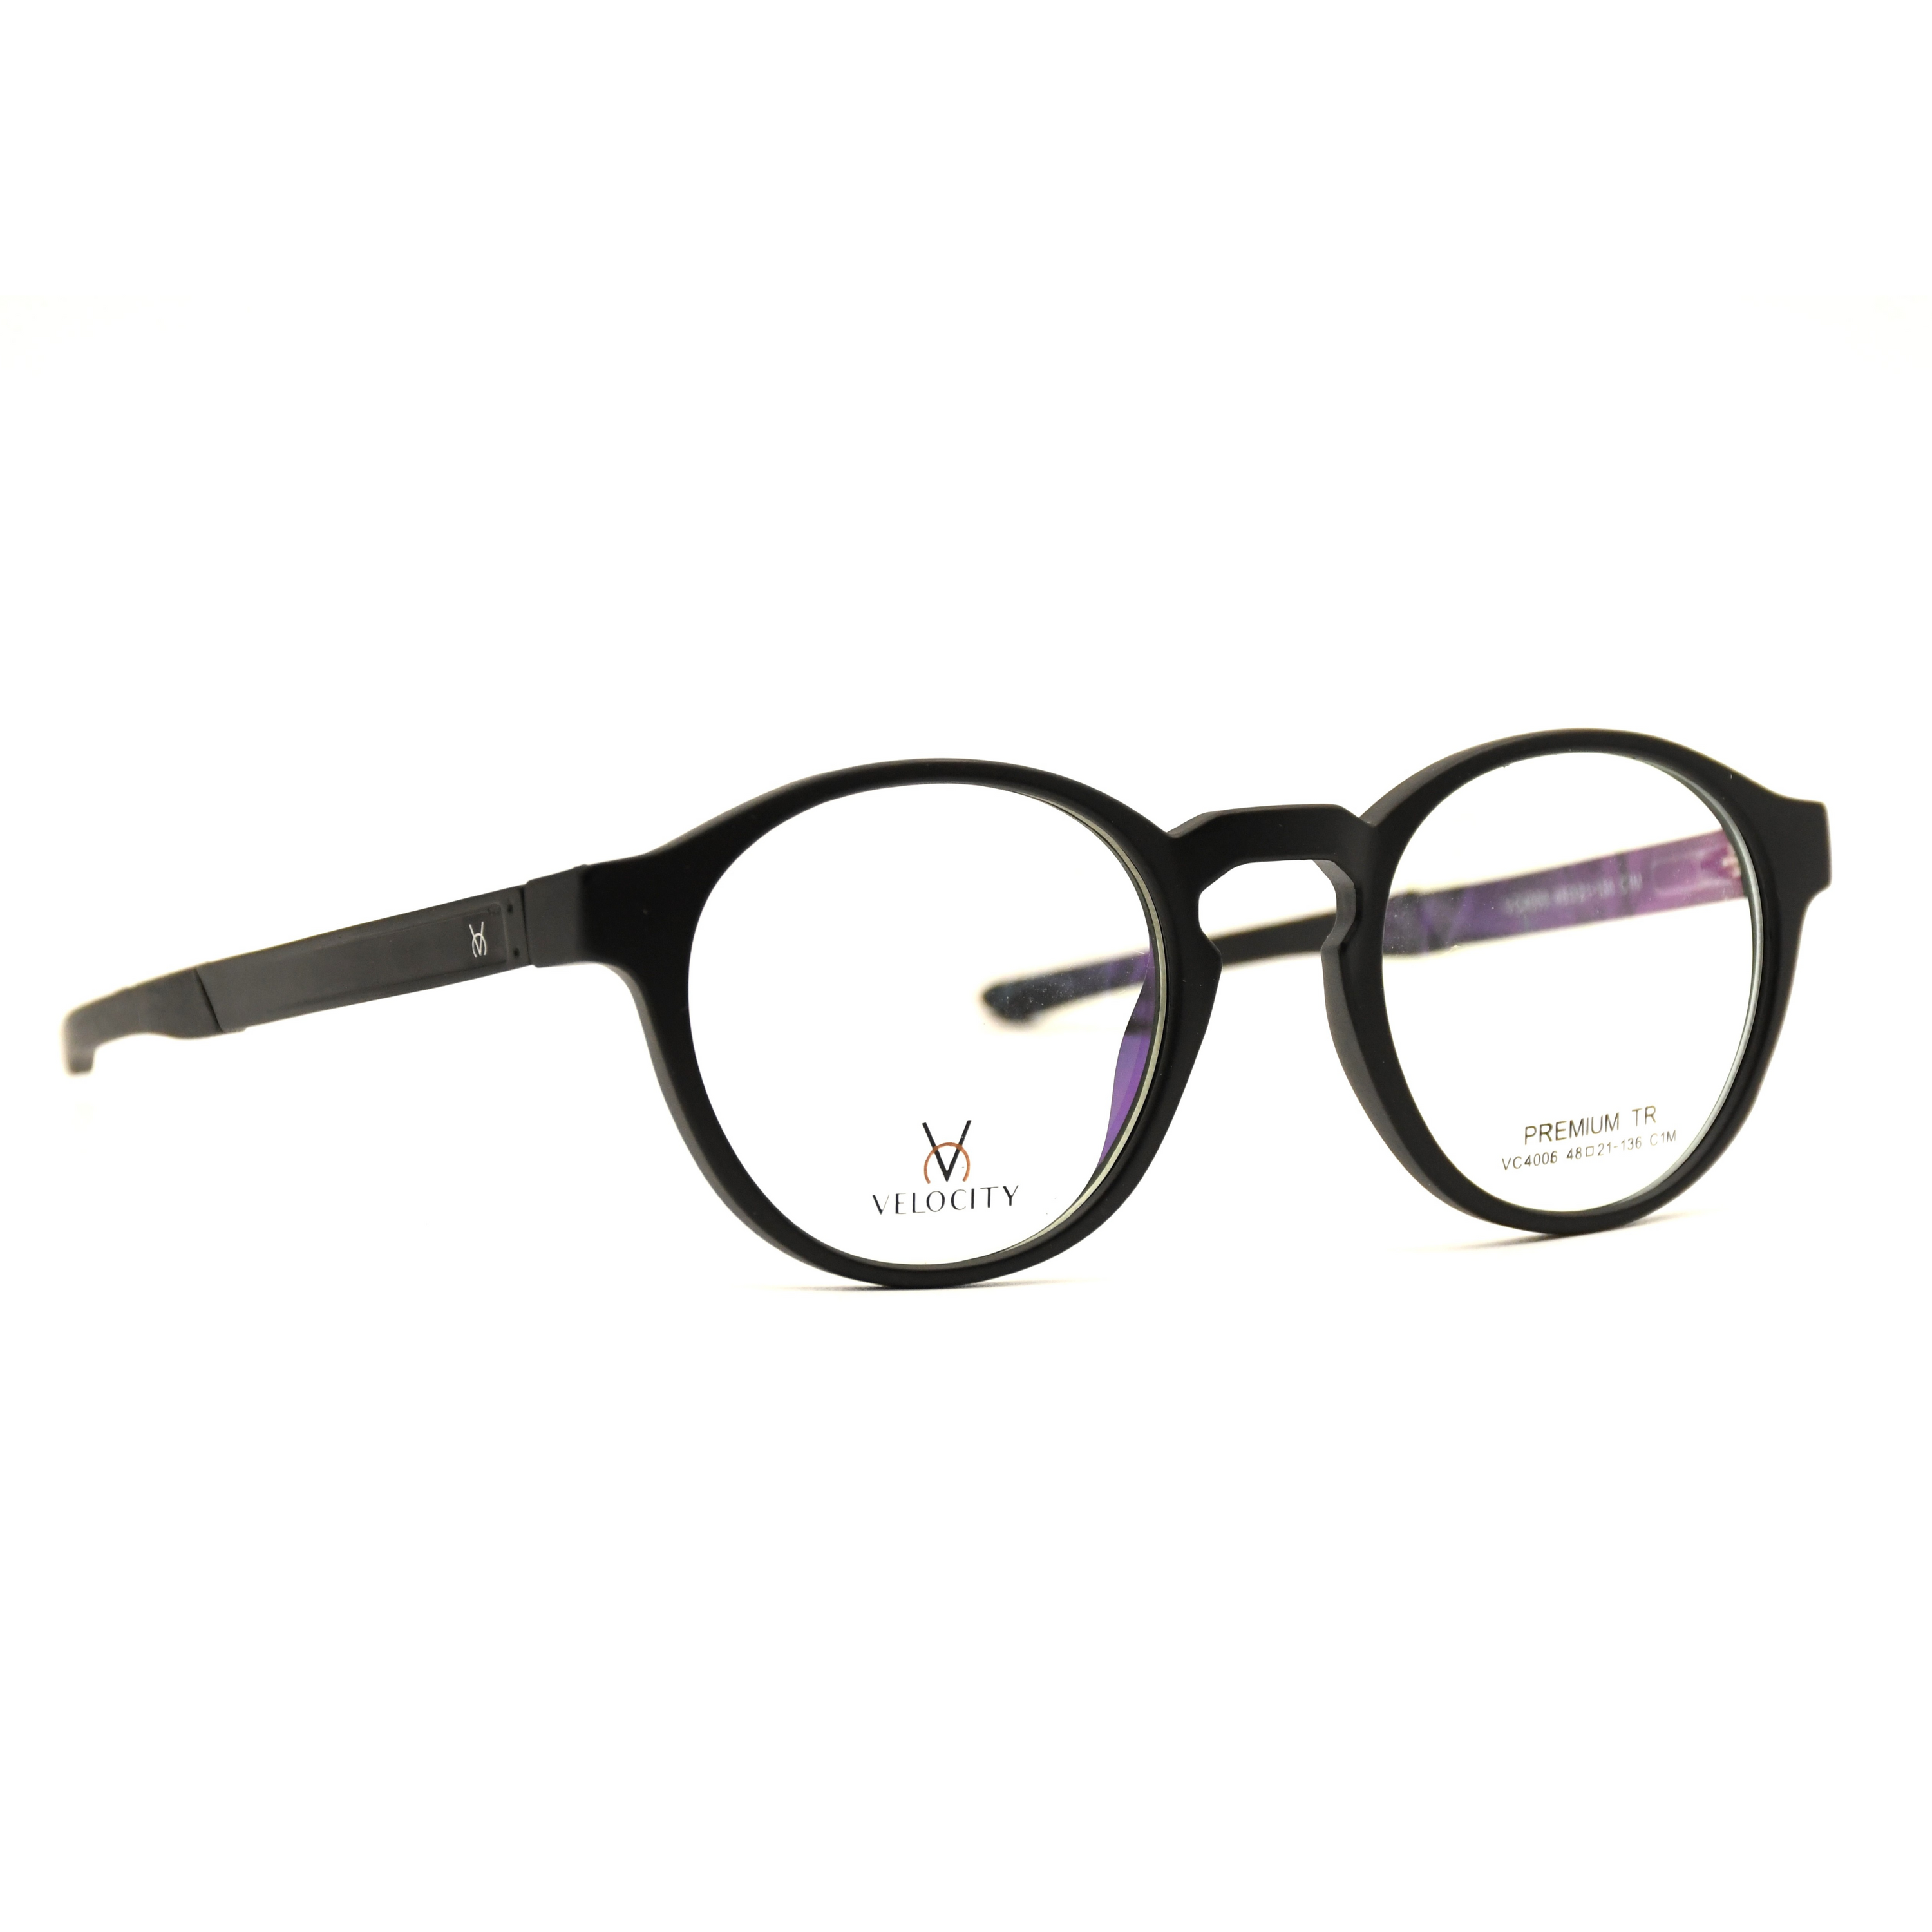 Velocity Full Rim Eyeglasses - 4006-C1M